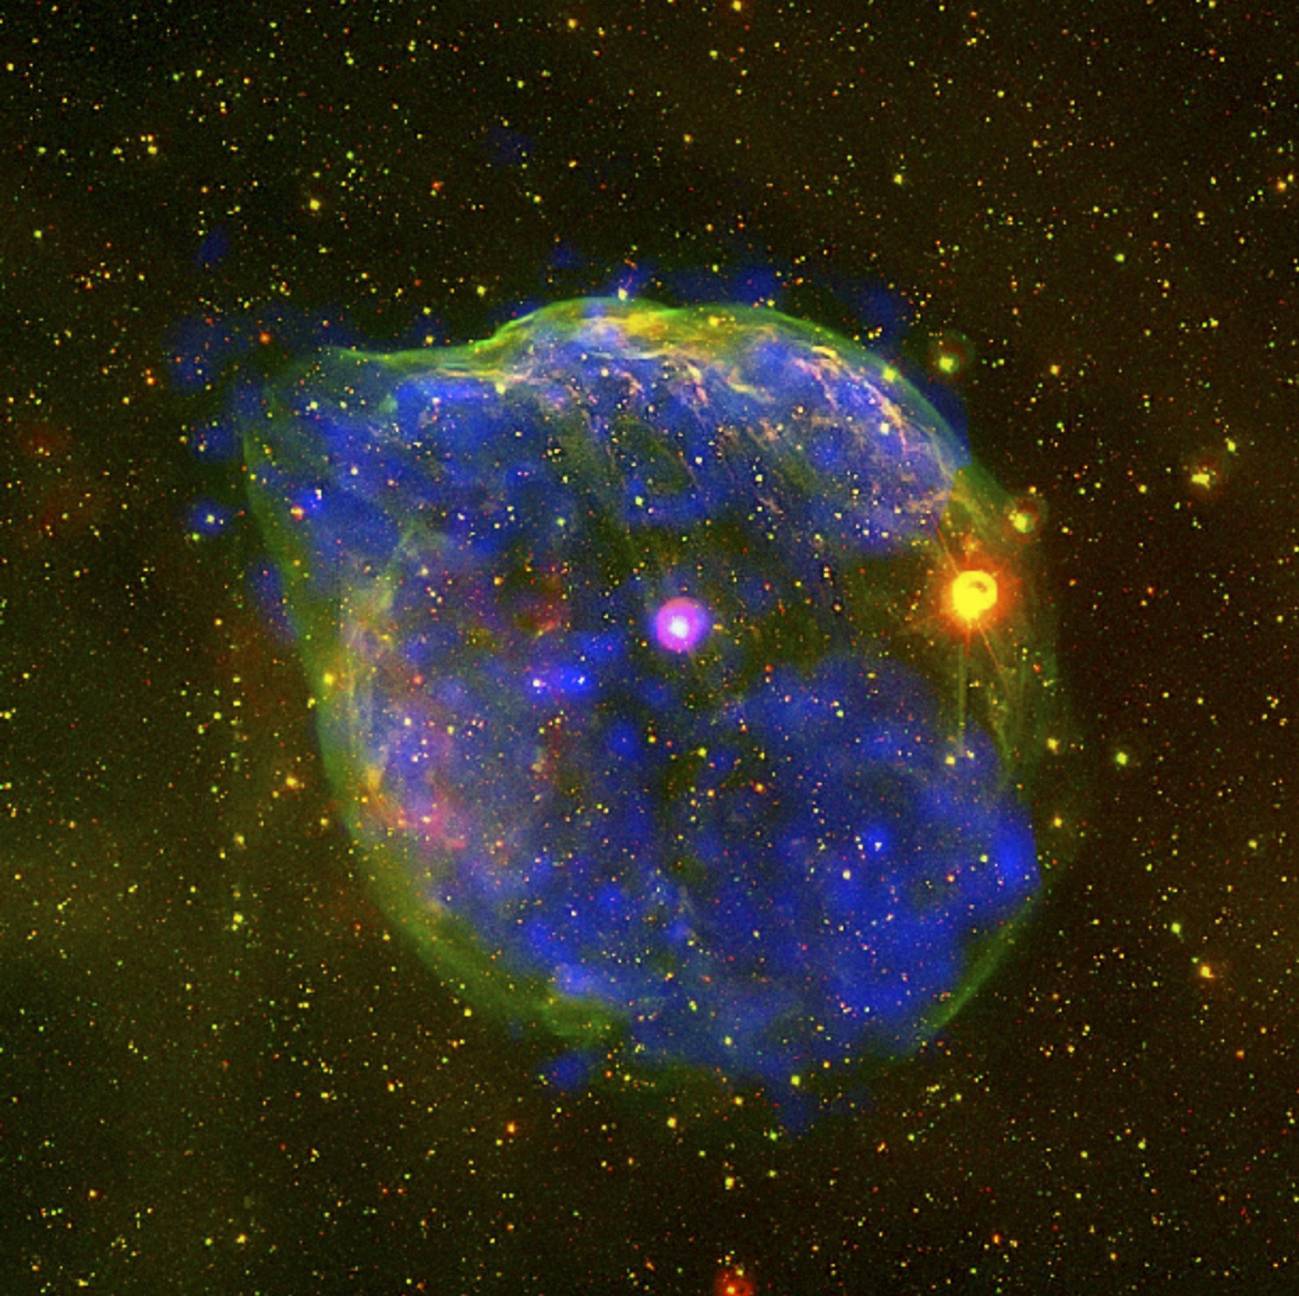 La burbuja abarca unos 60 años luz, y se creó bajo la acción del intenso viento emitido por la estrella de Wolf-Rayet HD 50896. Imagen: ESA